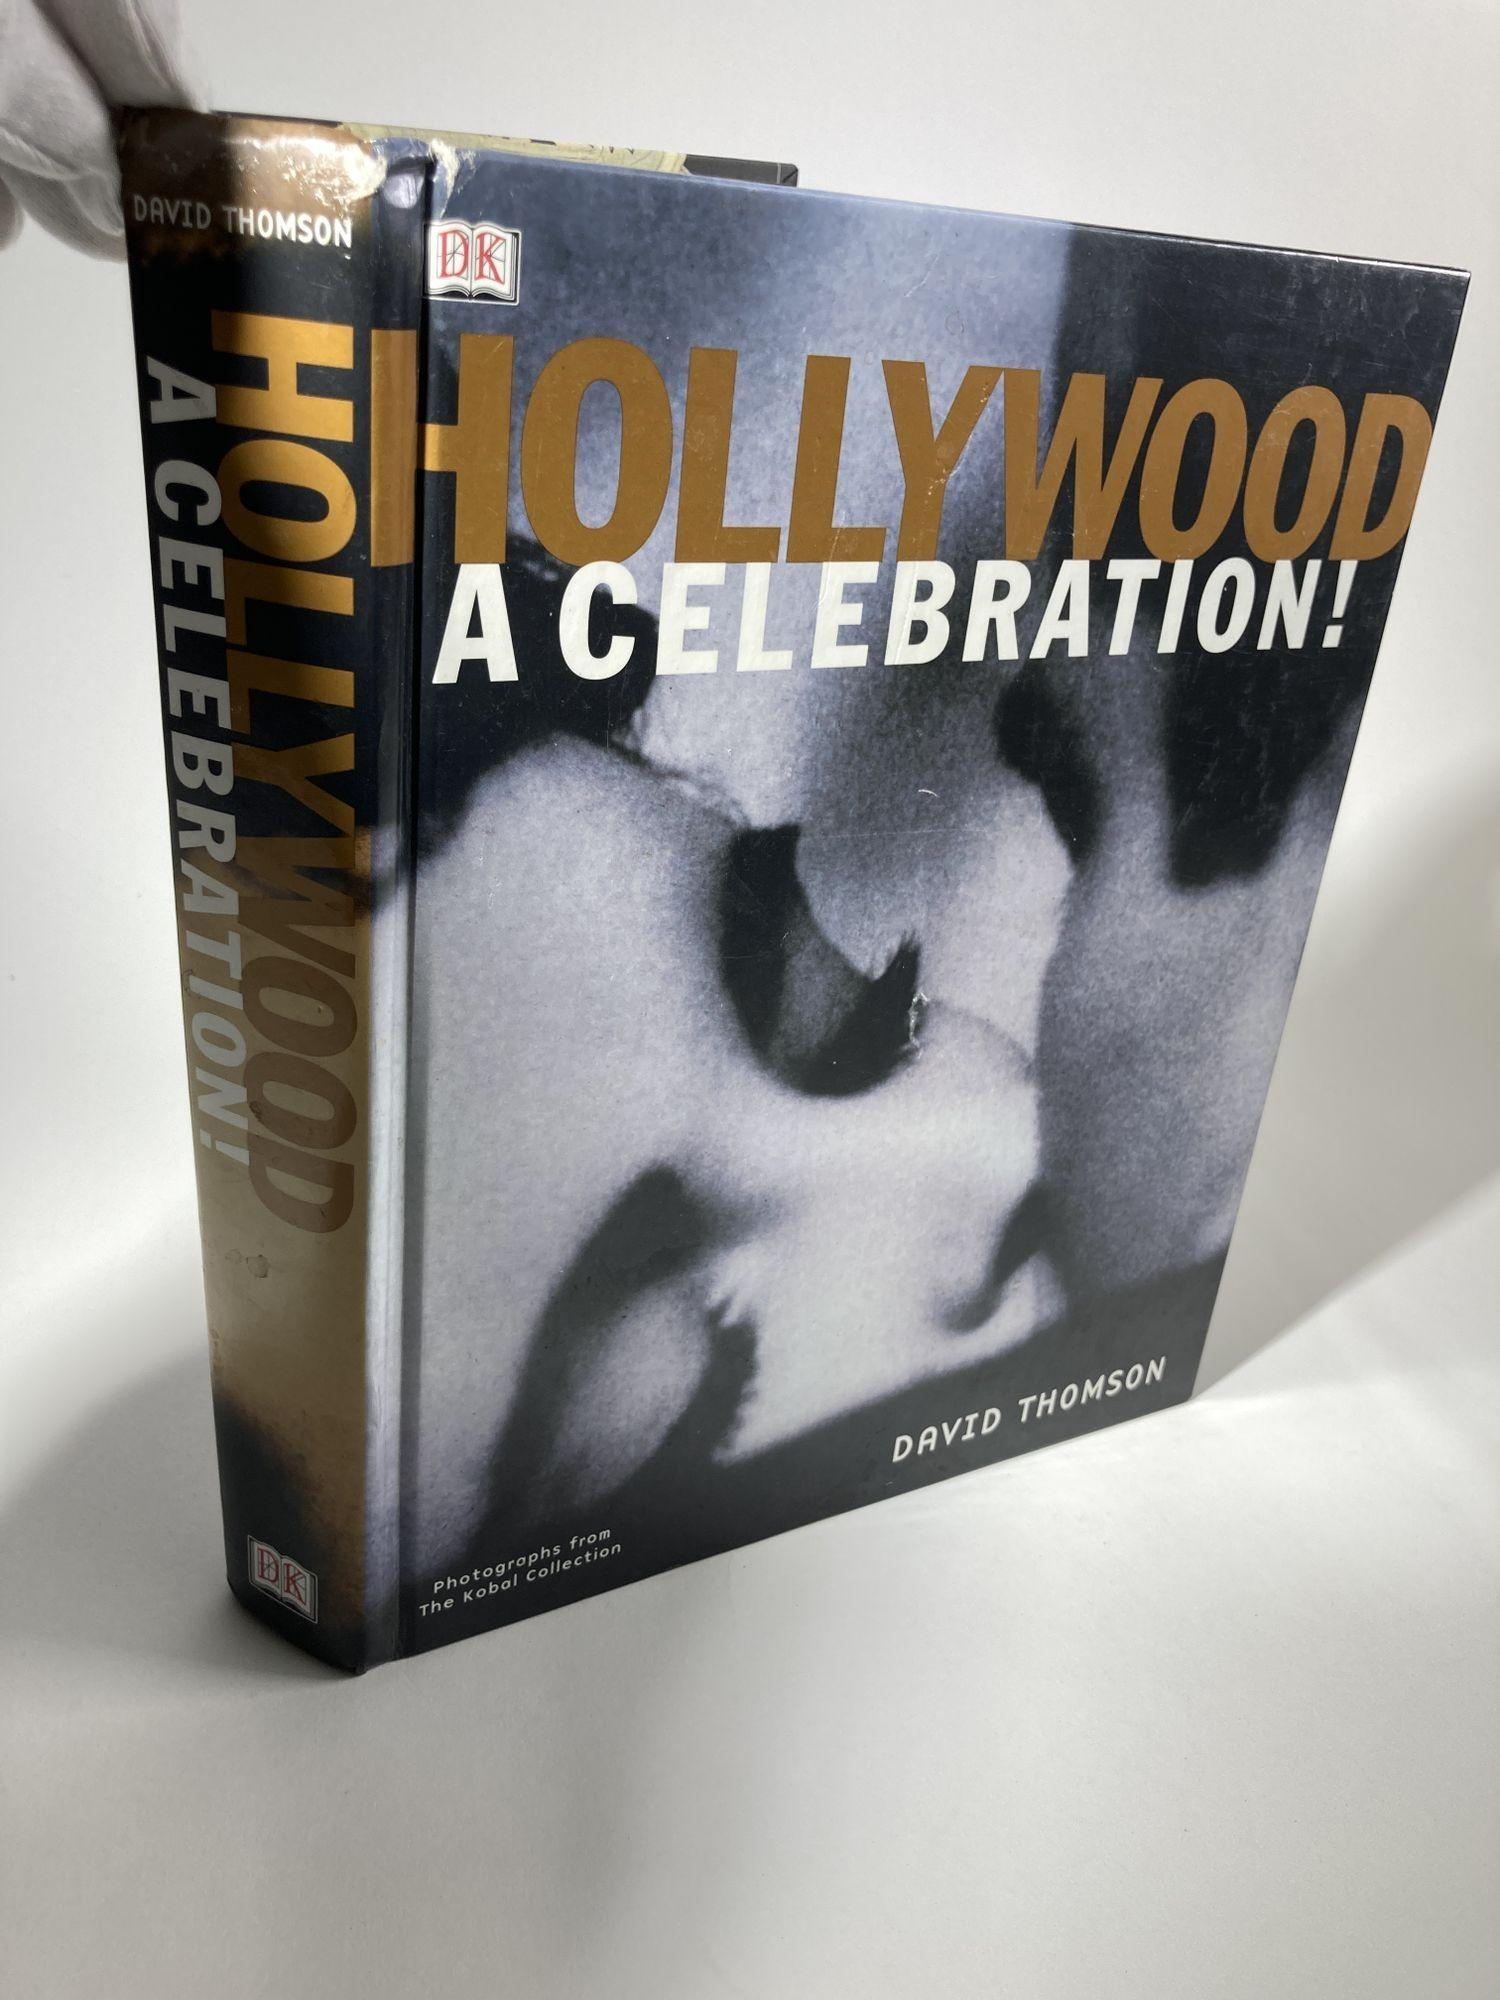 Hollywood: Una Celebración de David Thomson DK Pub., 2001 - Artes Escénicas - 640 páginas.
Desde el nacimiento de la industria cinematográfica en el polvoriento pueblo de Hollywood en 1905, hasta las extravagancias actuales de efectos especiales